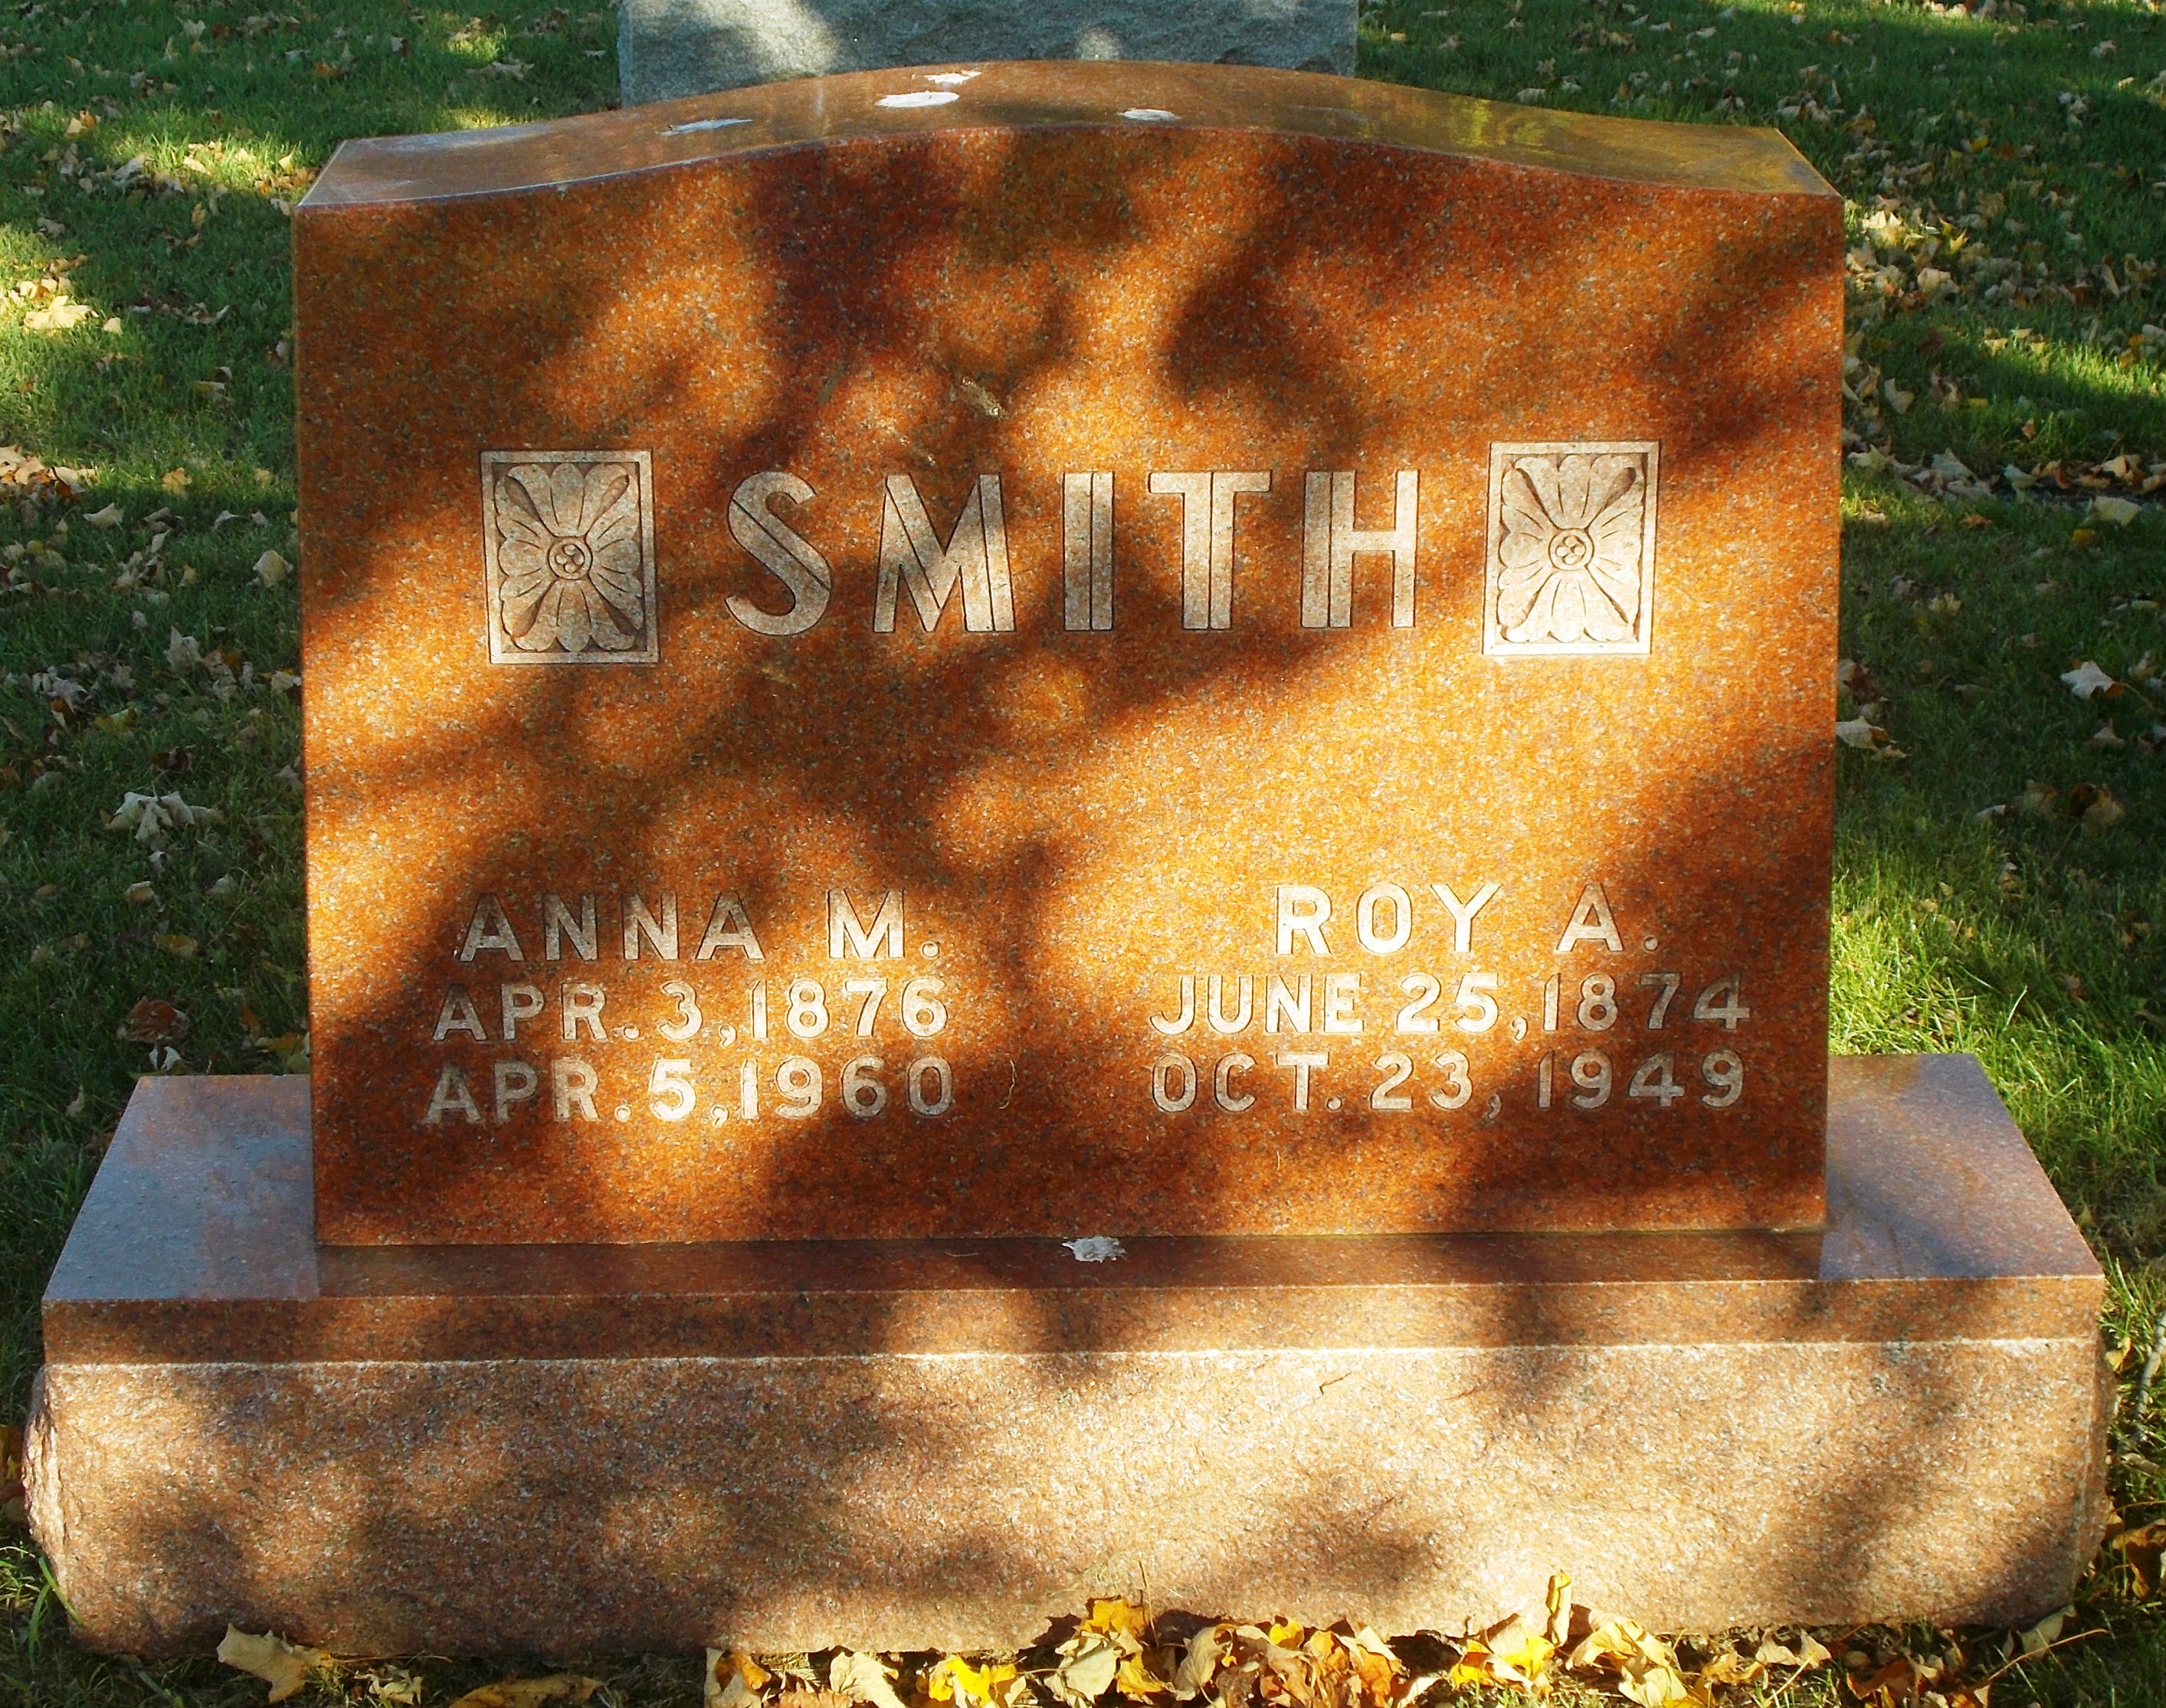 Roy A Smith